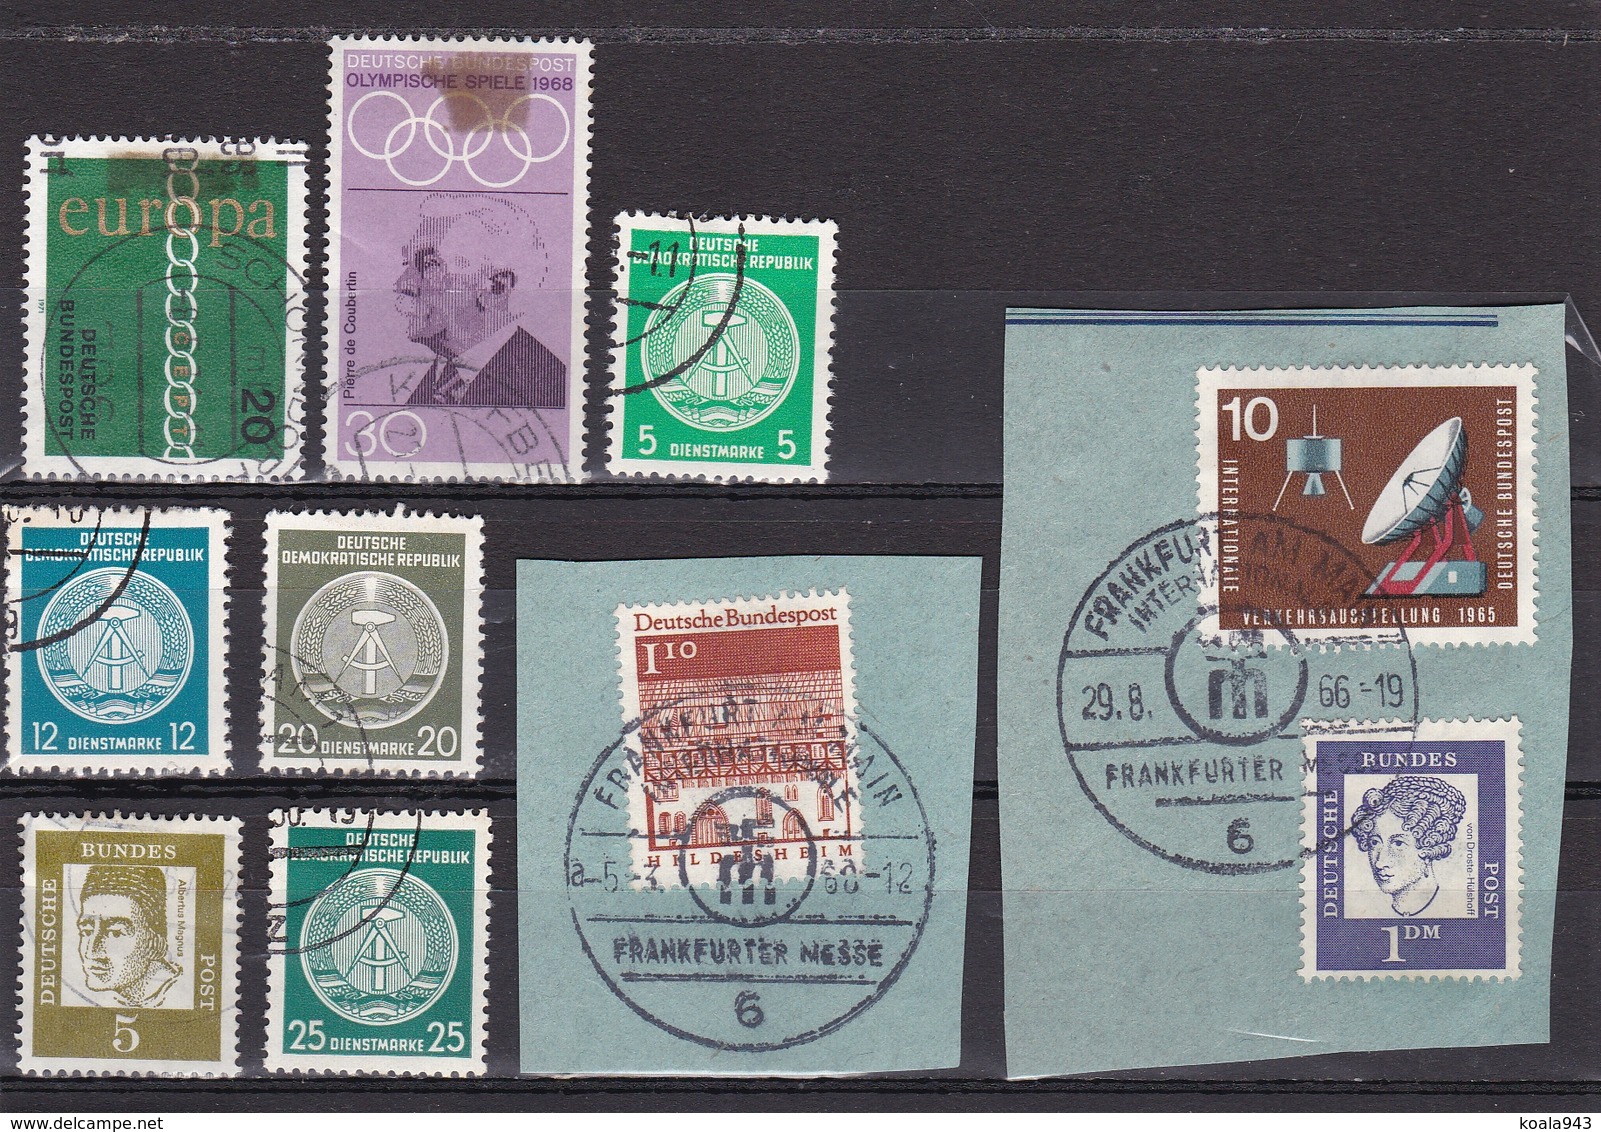 LOT/COLLECTION de environ 2200 TIMBRES (dont + de 1500 vrac à trier) Variés - Timbres/Stamps -